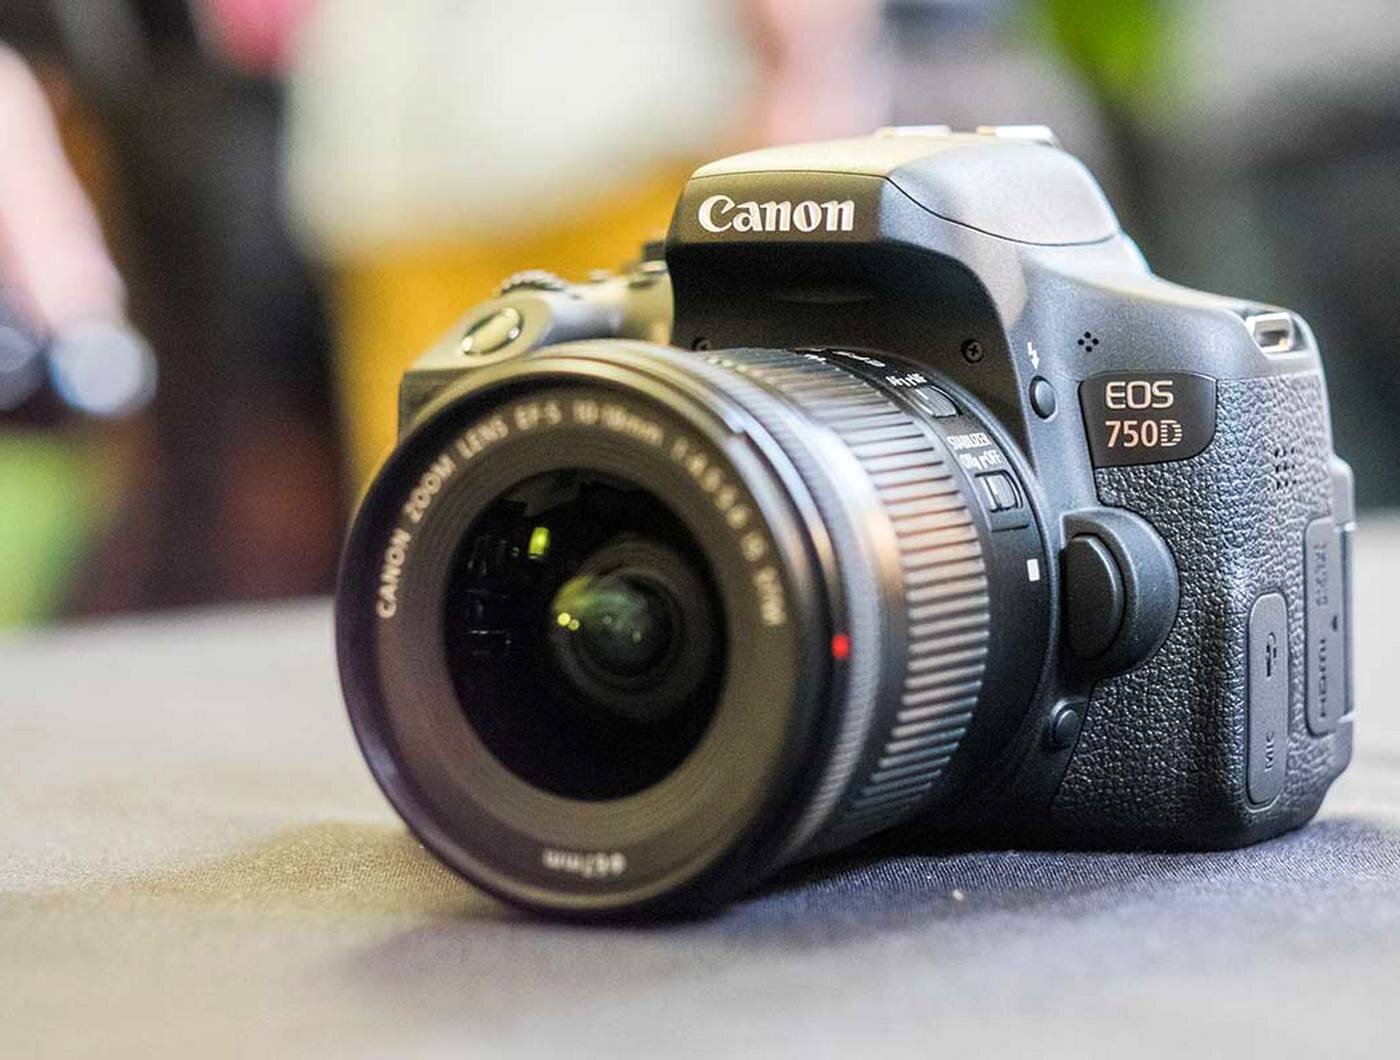 Máy ảnh Canon EOS 750D được thiết kế với lớp da đen sần 